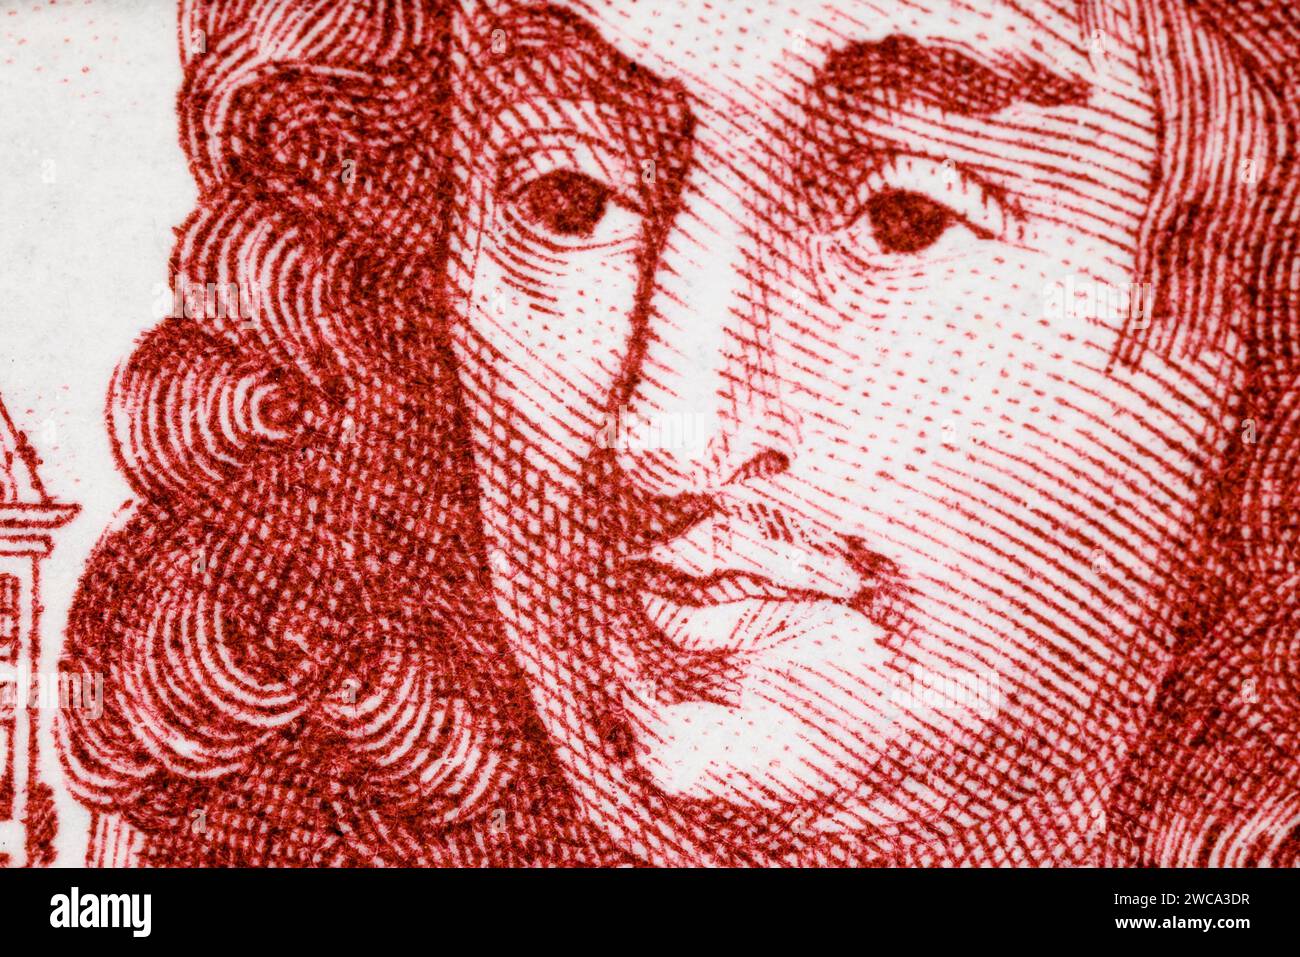 Ritratto di Louis le Vau (1612-1670) architetto - dettaglio da francobollo francese (1970) Foto Stock